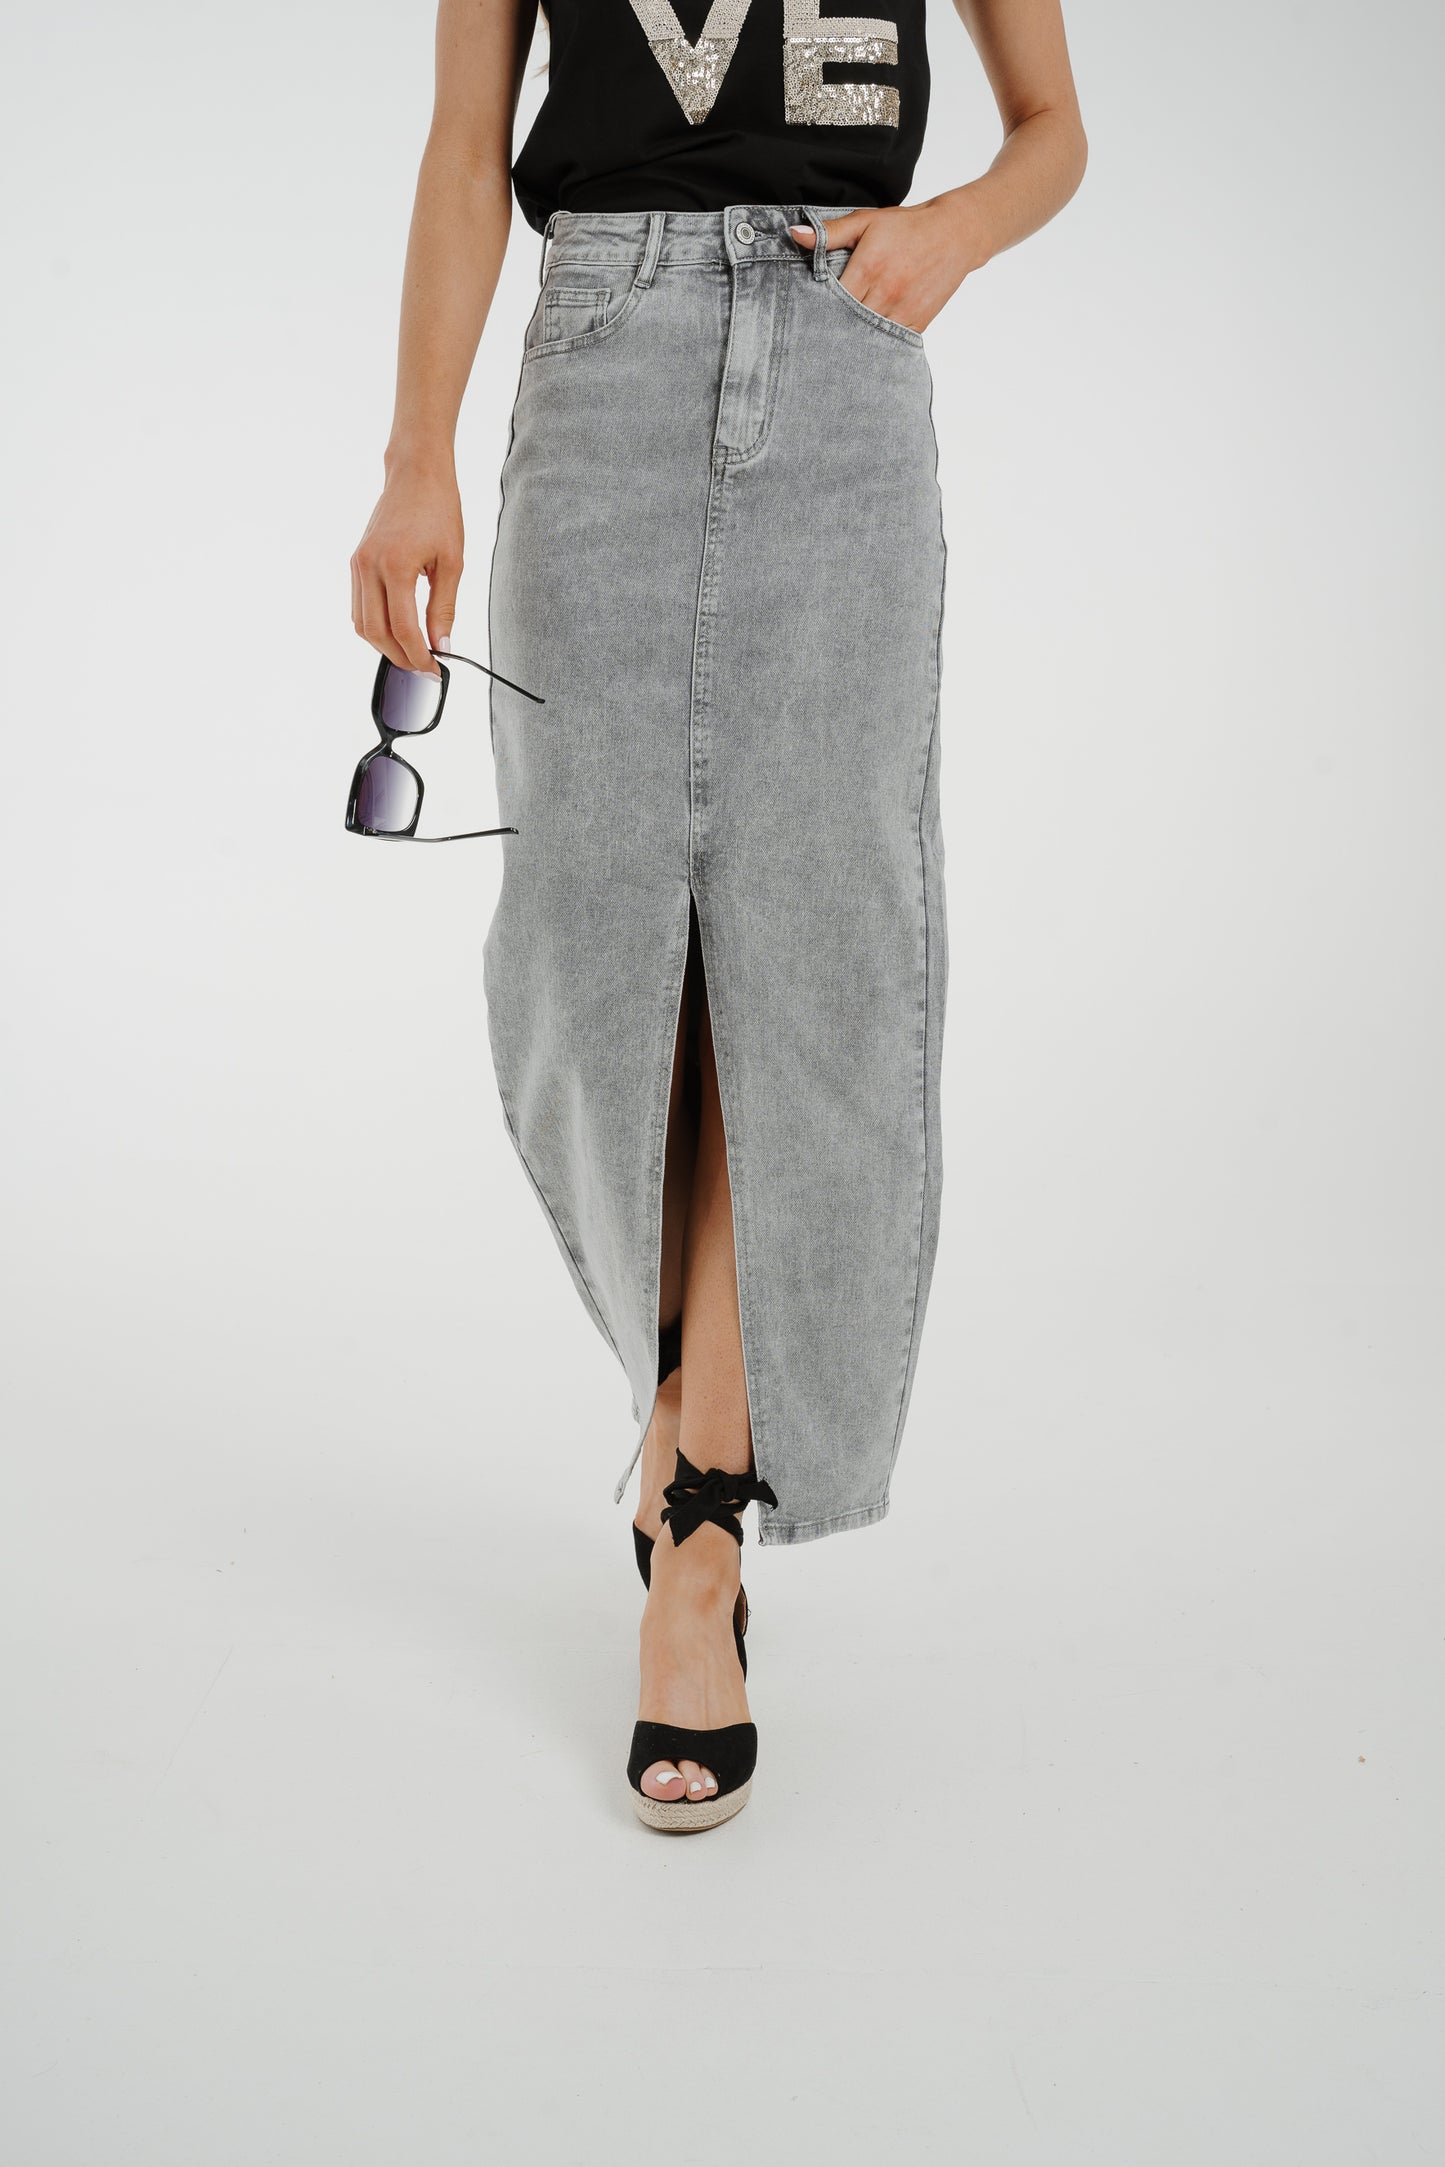 Lynne Denim Maxi Skirt In Grey